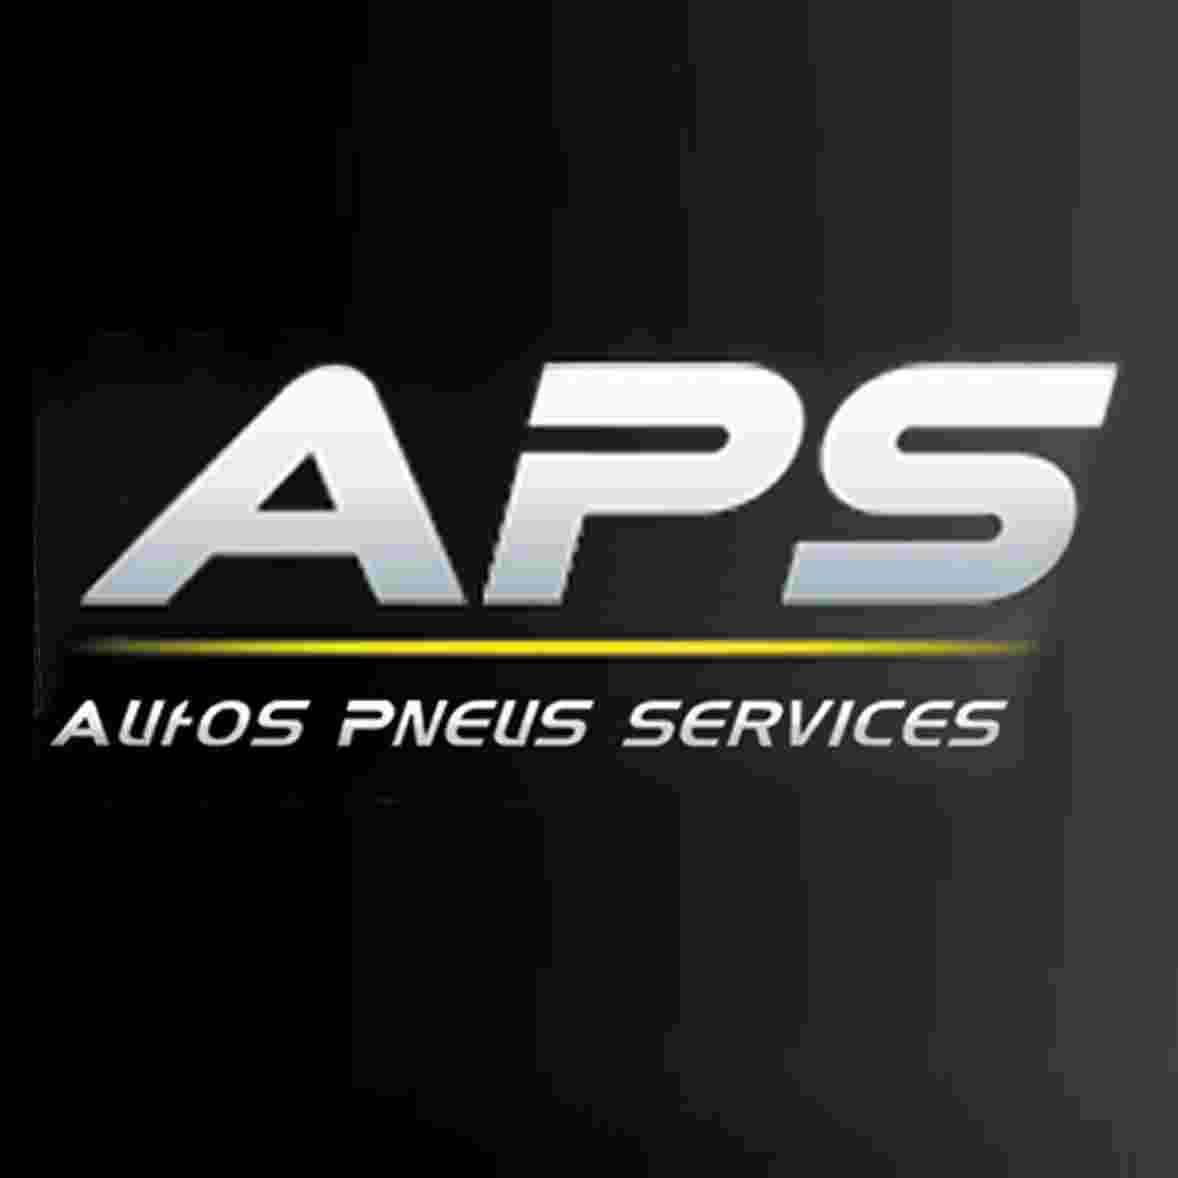 Autos Pneus Services  "APS"